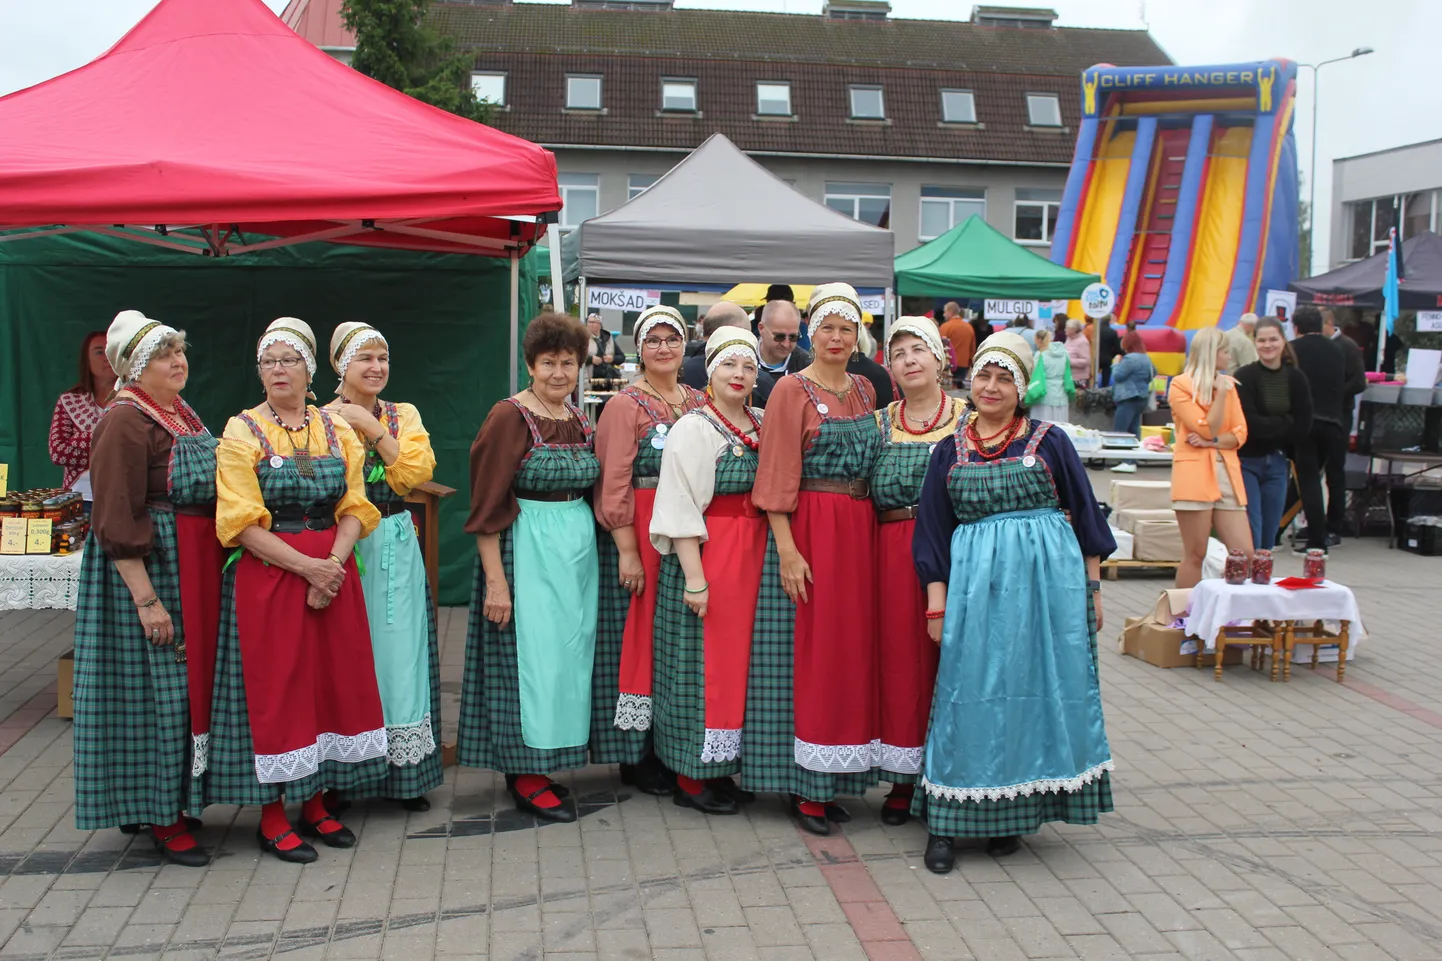 Танцевальный ансамбль "Метсакукад" часто выступает, недавно идавирусцев пригласили на открытие фестиваля меда в Вильяндимаа.